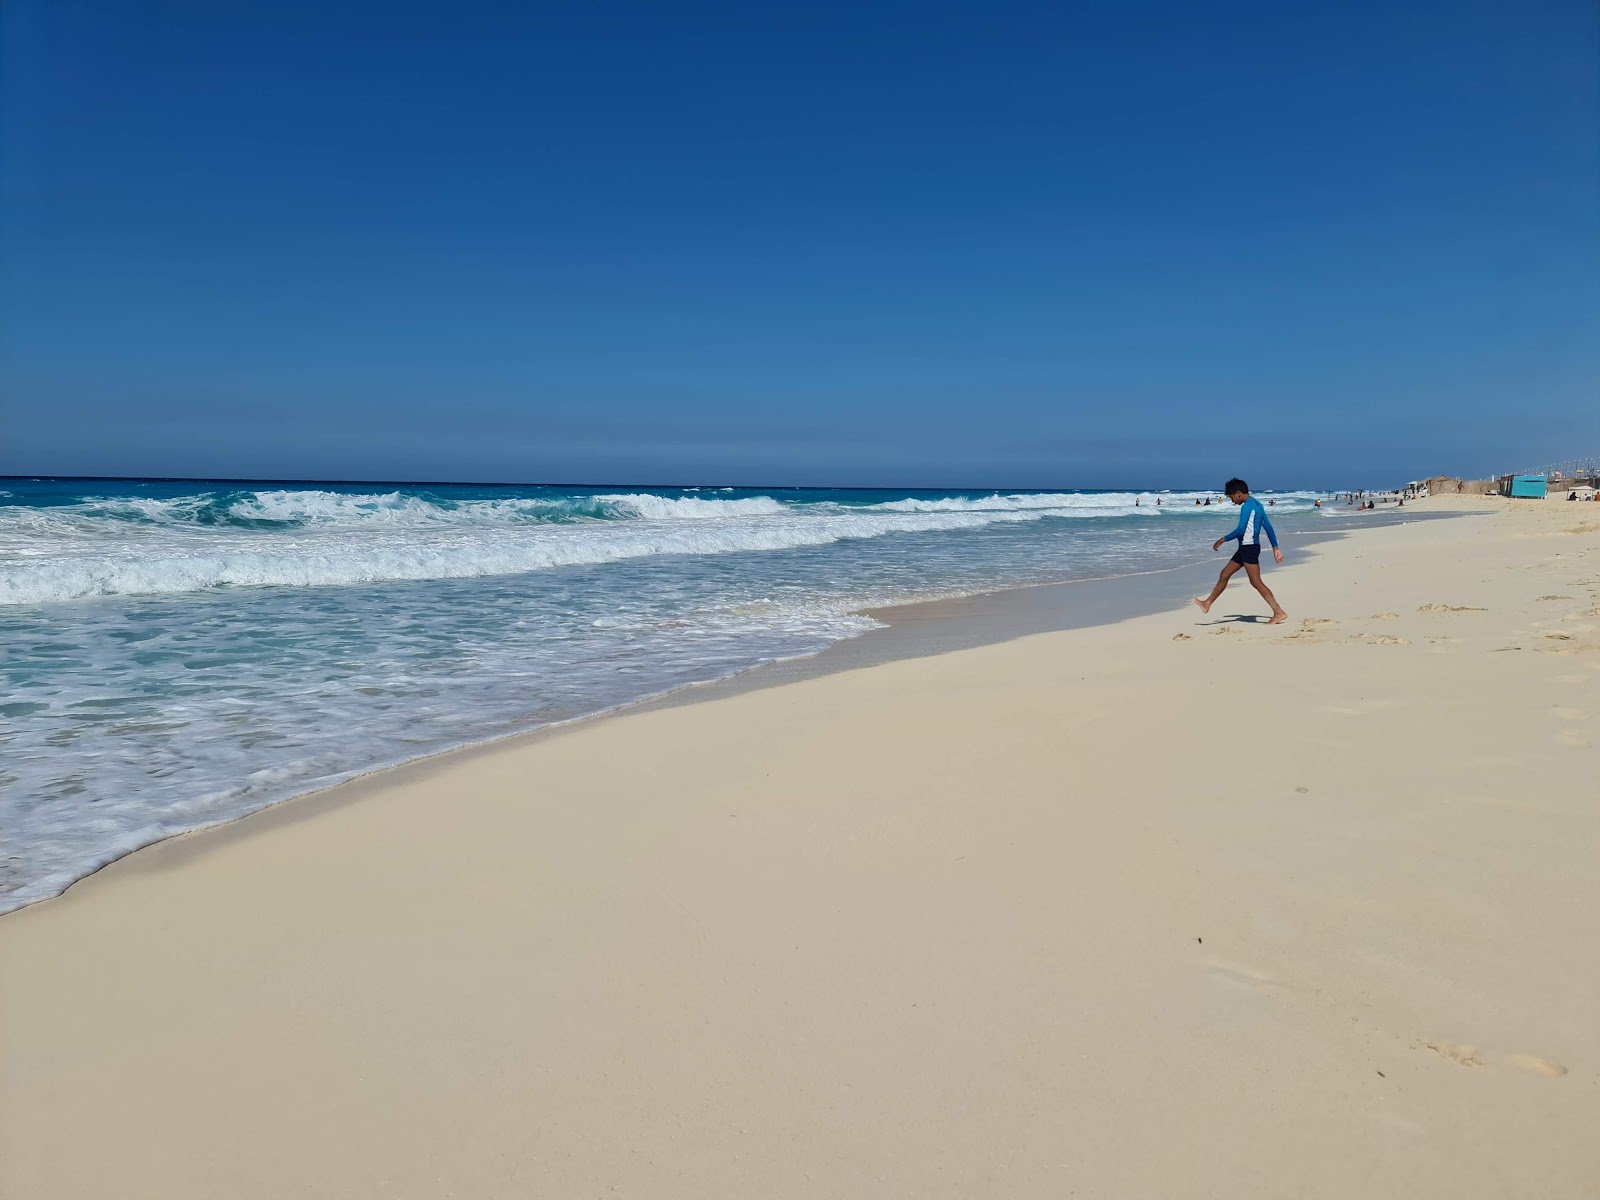 Blue Sand beach'in fotoğrafı parlak ince kum yüzey ile